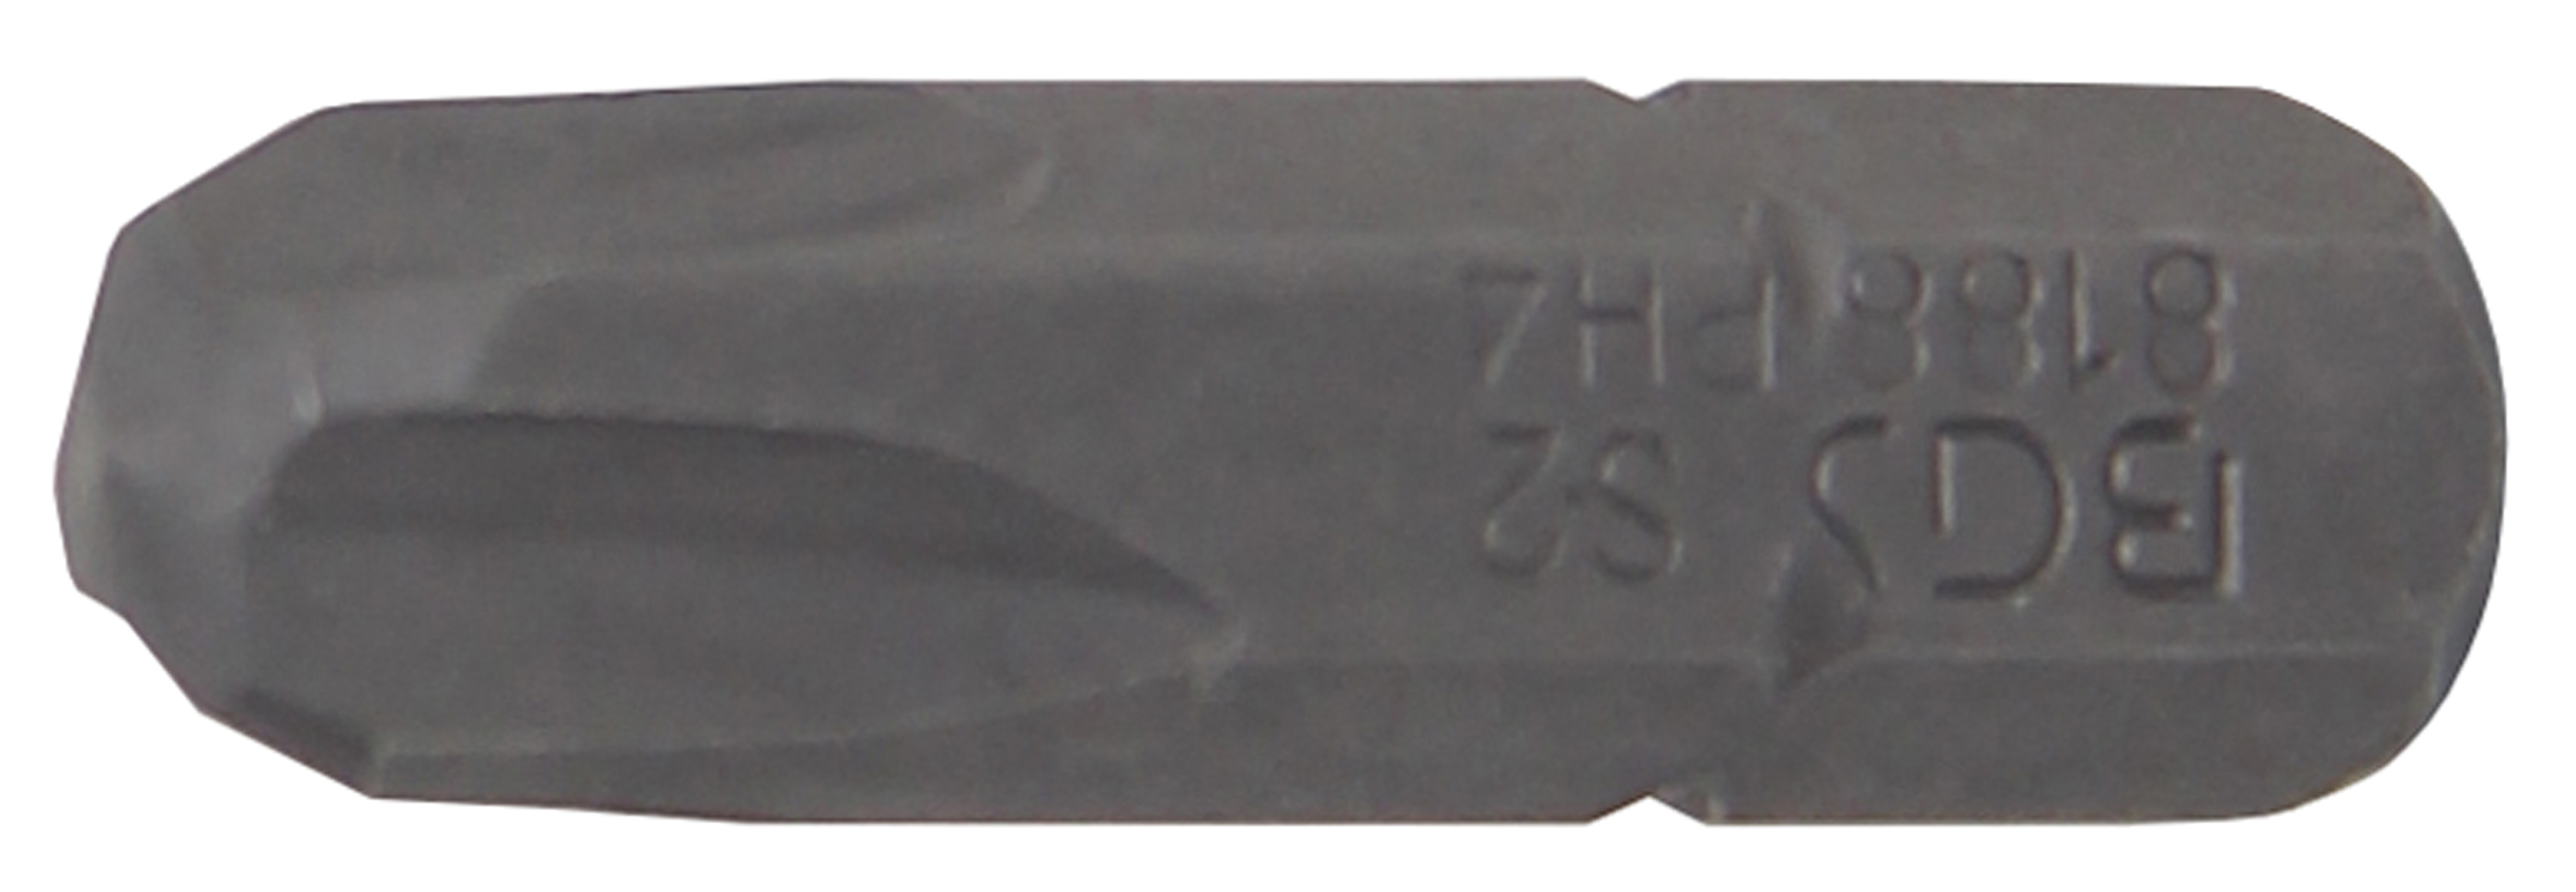 BGS Bit | Länge 25 mm | Antrieb Außensechskant 6,3 mm (1/4") | Kreuzschlitz PH4